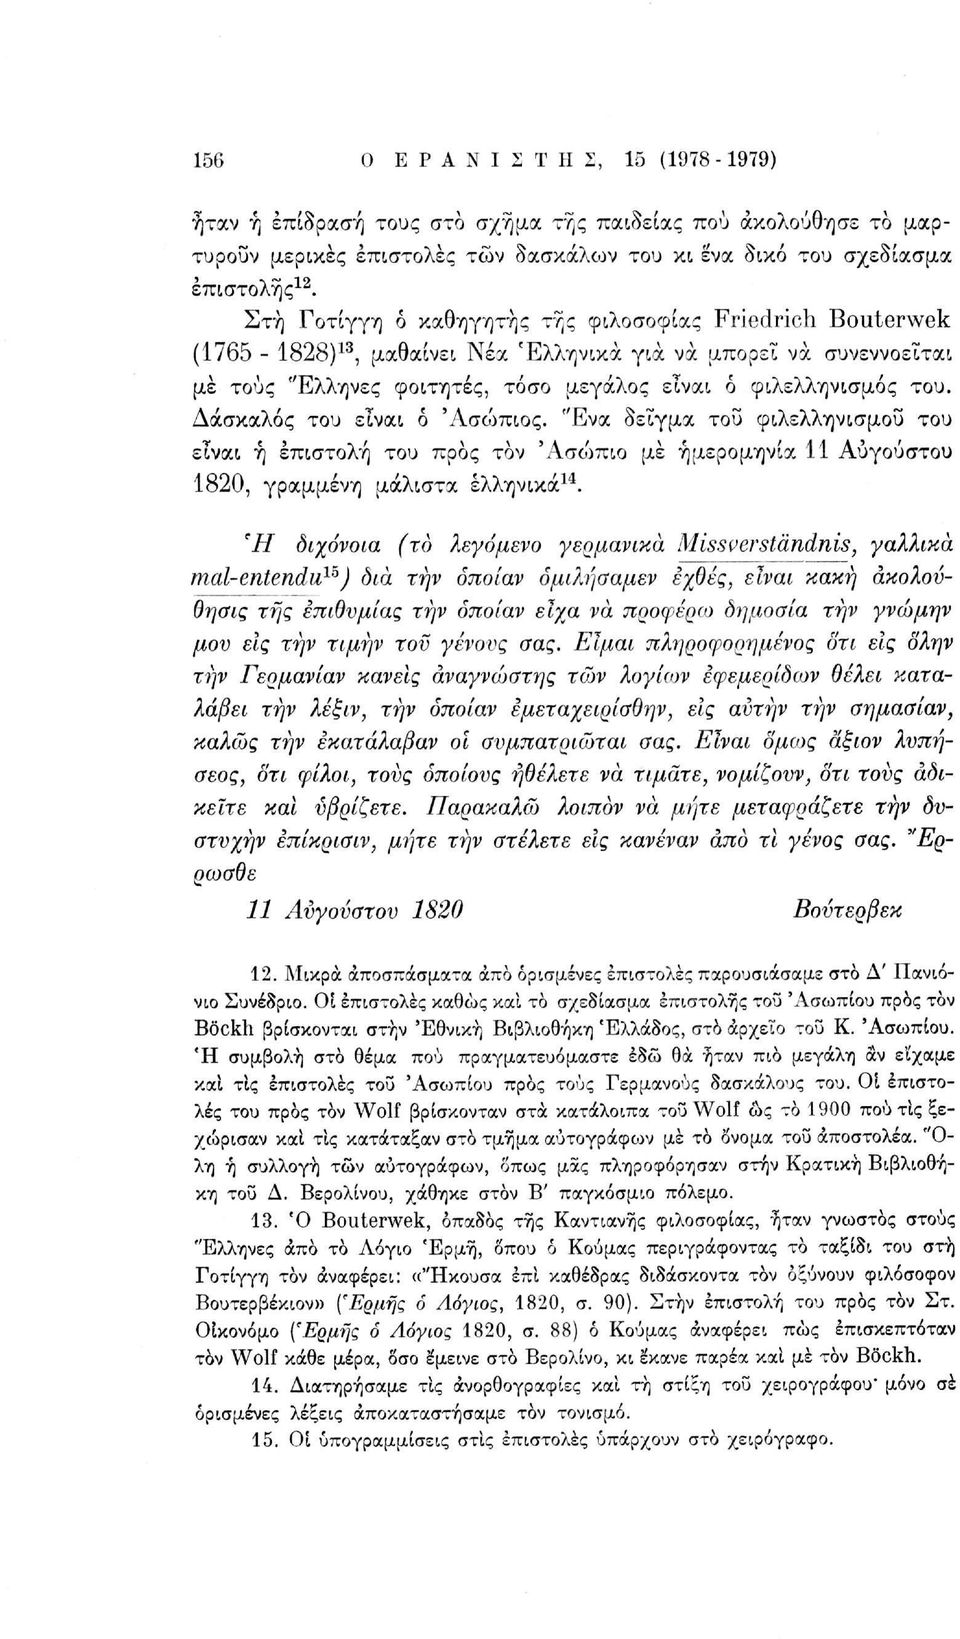 Δάσκαλος του είναι ό 'Λσώπιος. "Ενα δείγμα τοΰ φιλελληνισμού του είναι ή επιστολή του προς τον Άσώπιο μέ ημερομηνία 11 Αυγούστου 1820, γραμμένη μάλιστα ελληνικά 14.